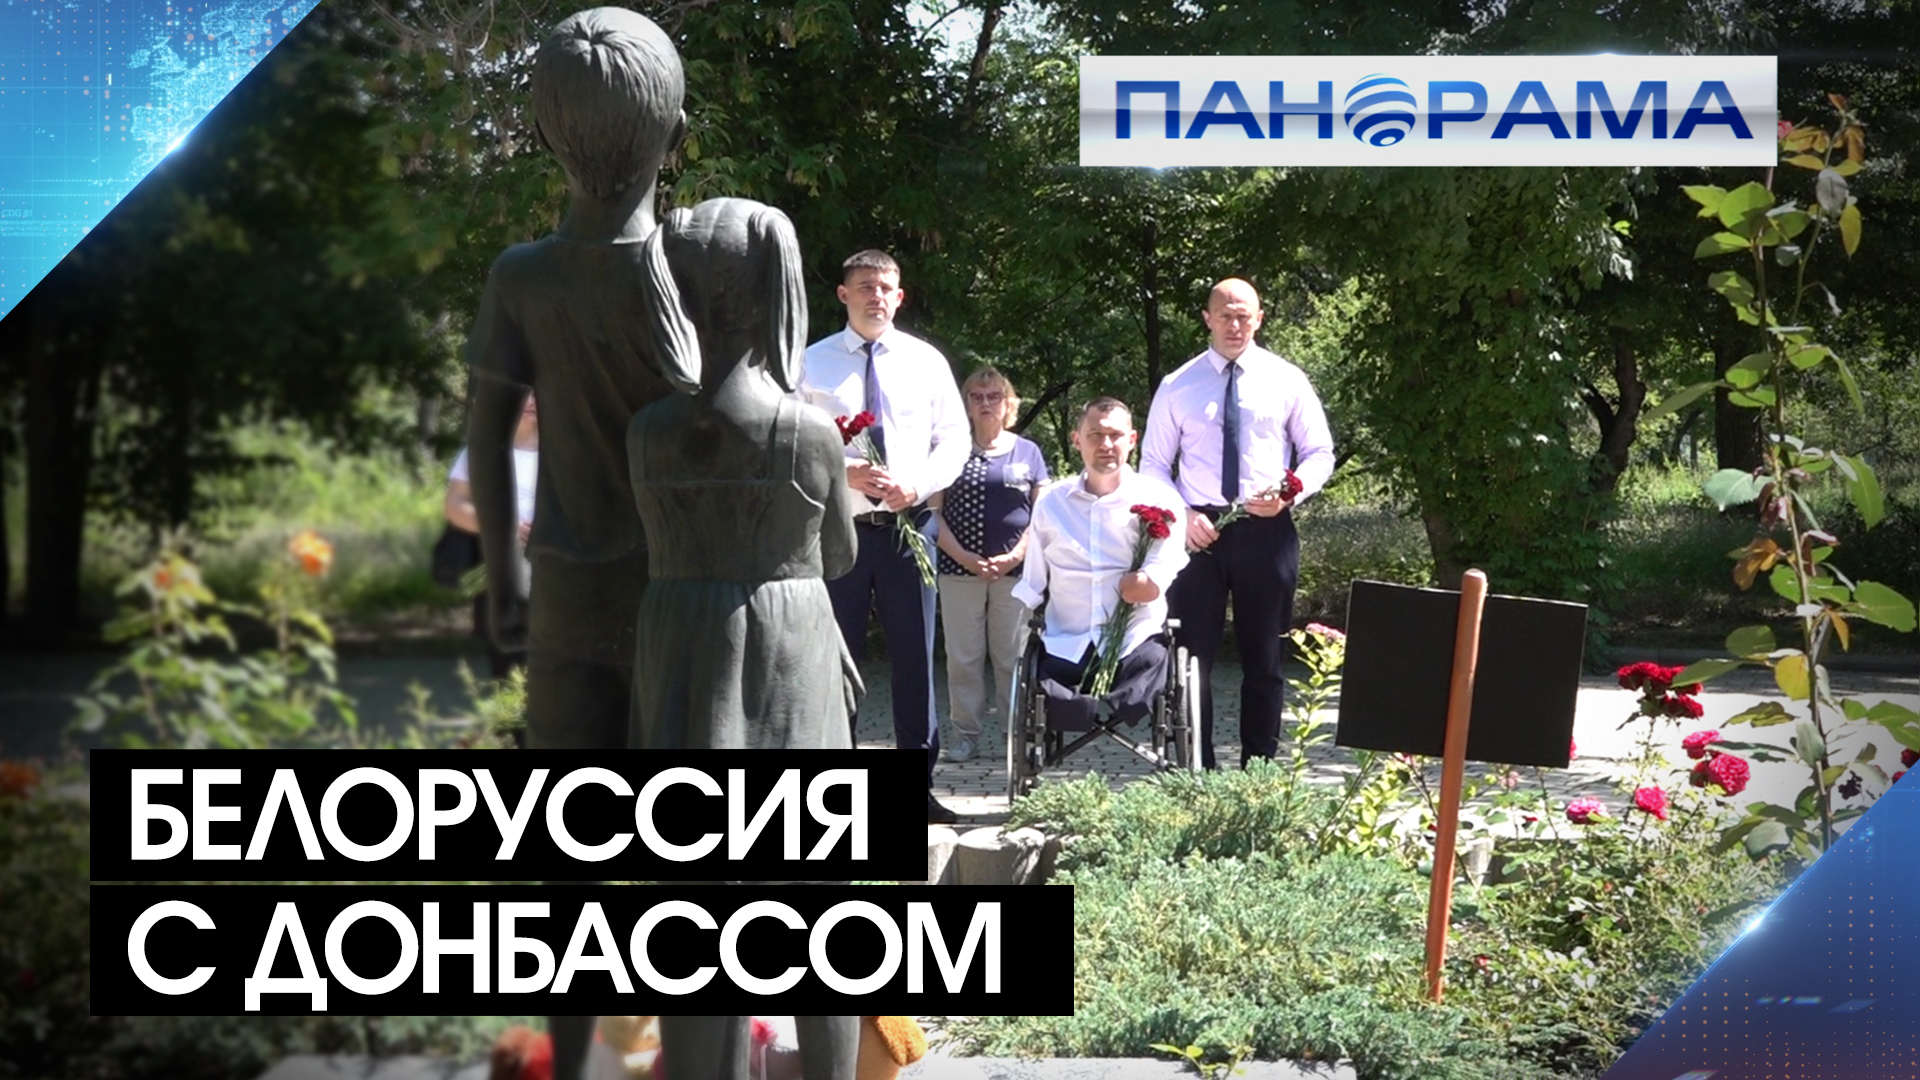 Паралимпиец Алексей Талай в ДНР! Благотворитель и мотиватор помогает раненым бойцам и детям Донбасса